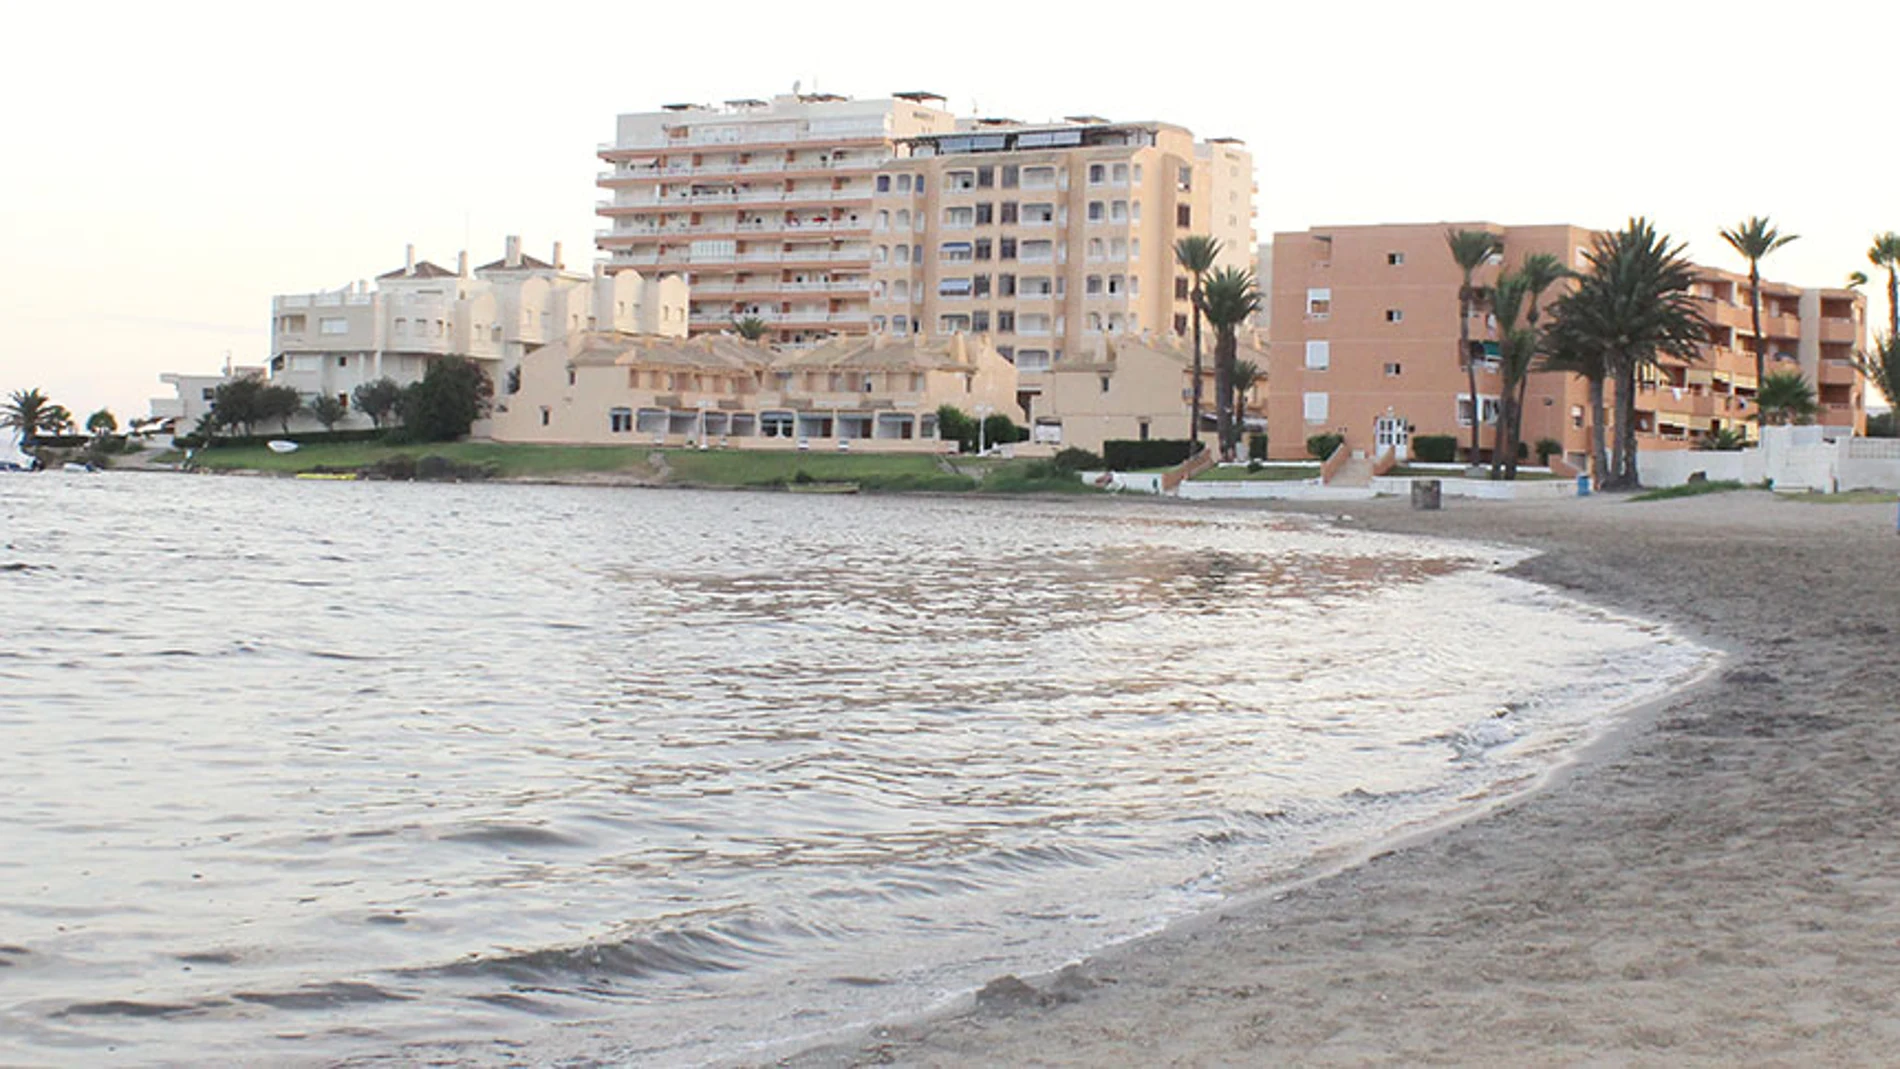 El 70 por ciento de las segundas residencias en España están ubicadas en zonas costeras